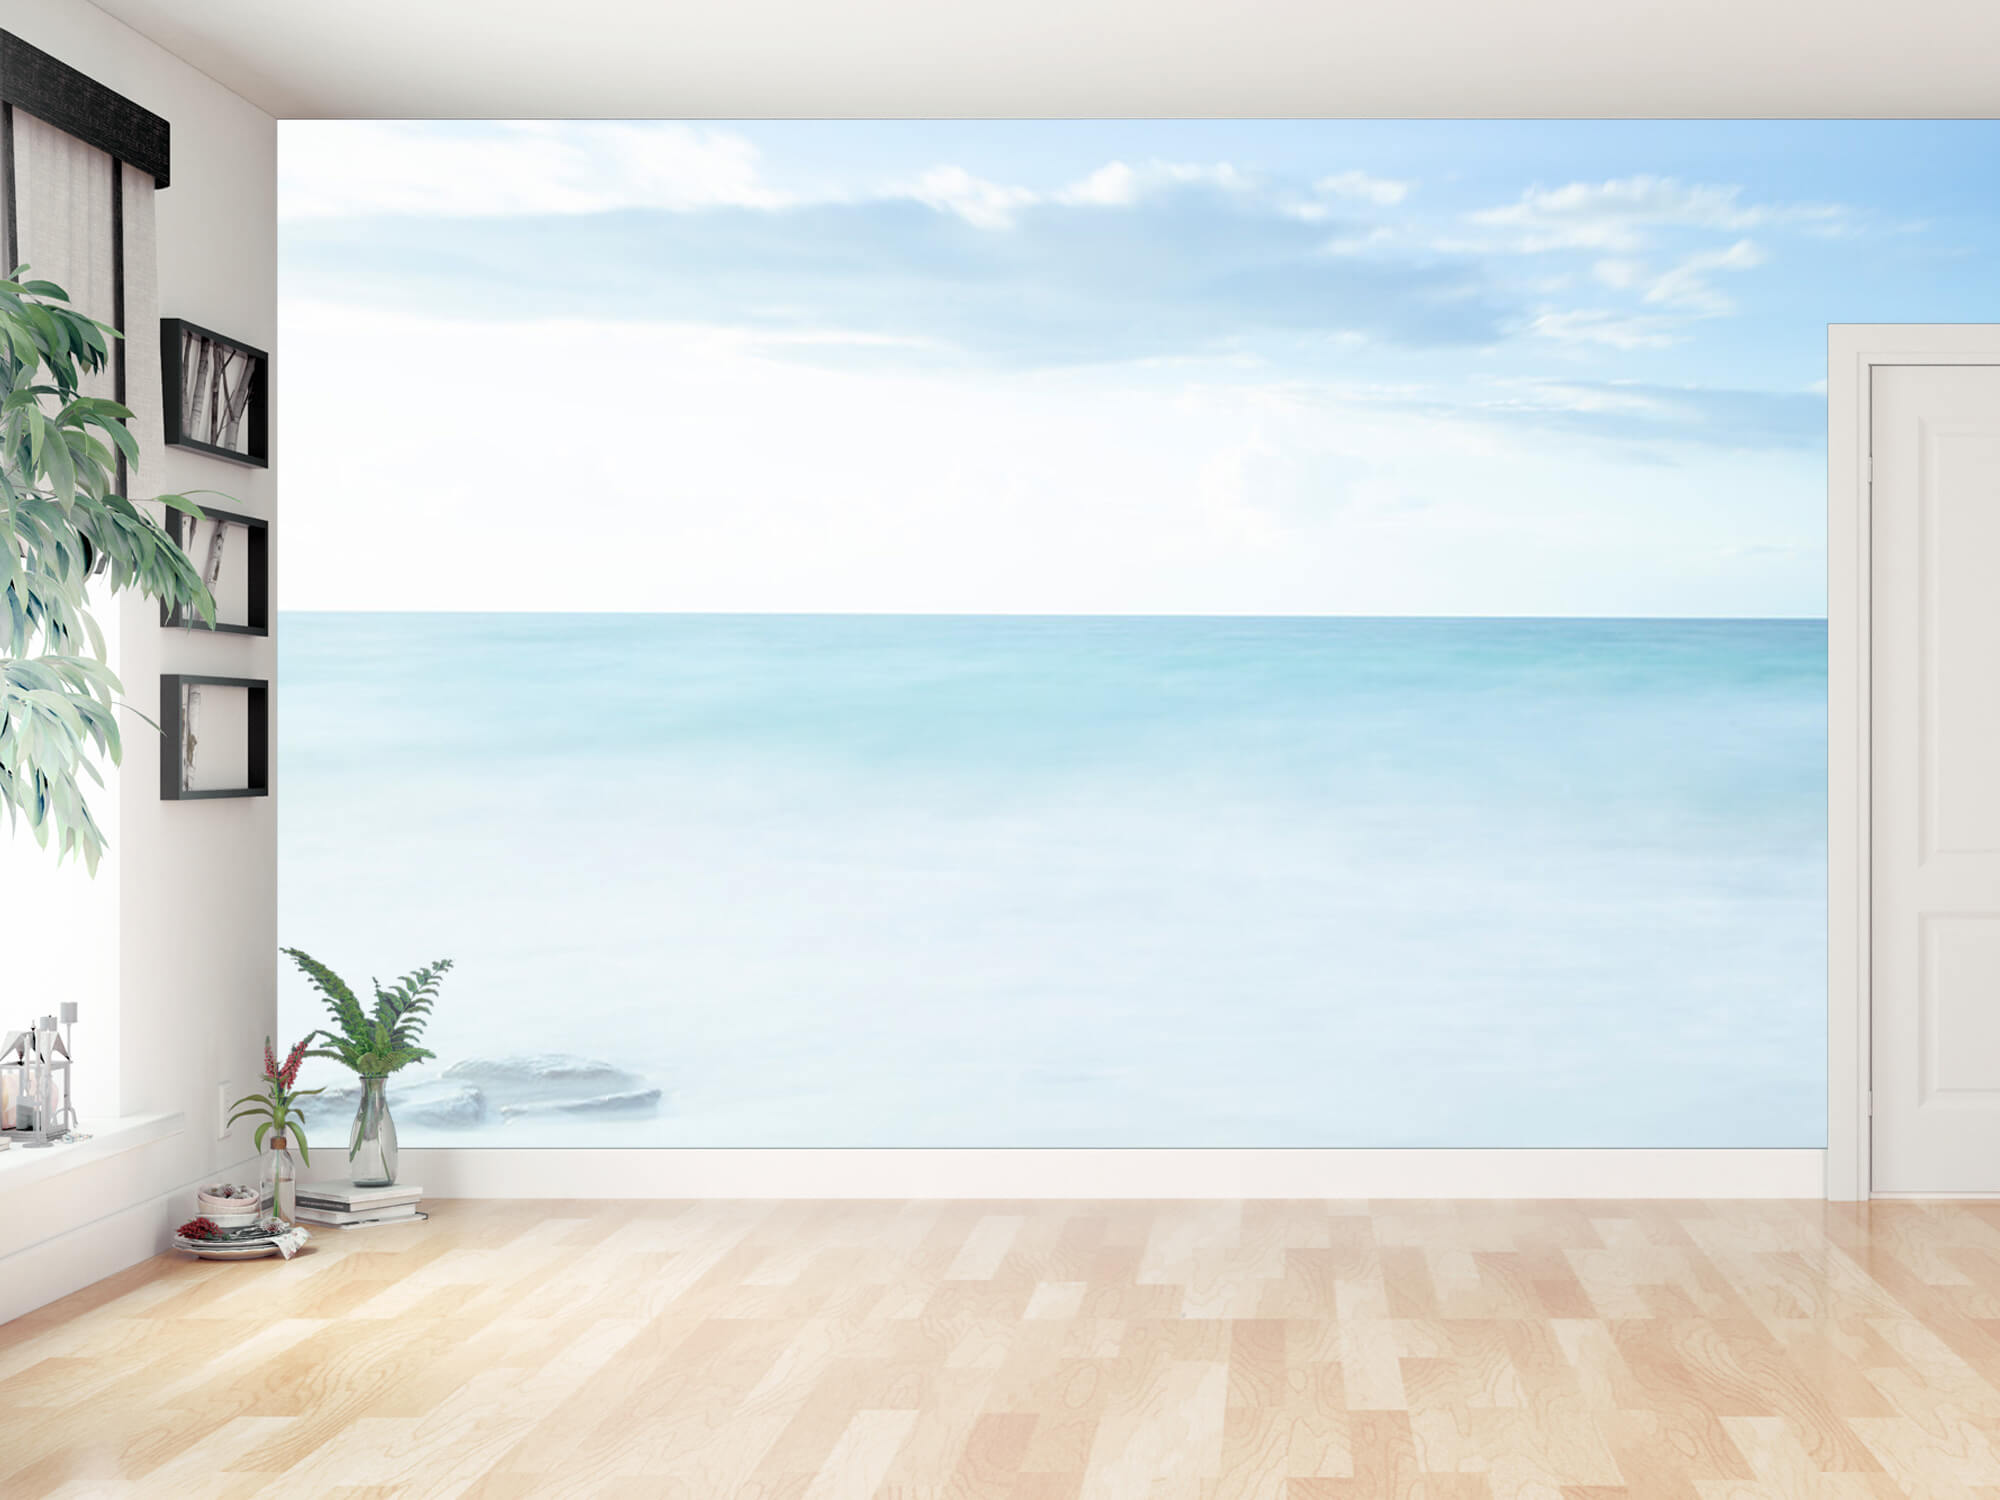  Papel pintado con Playa tranquila - Habitación 9